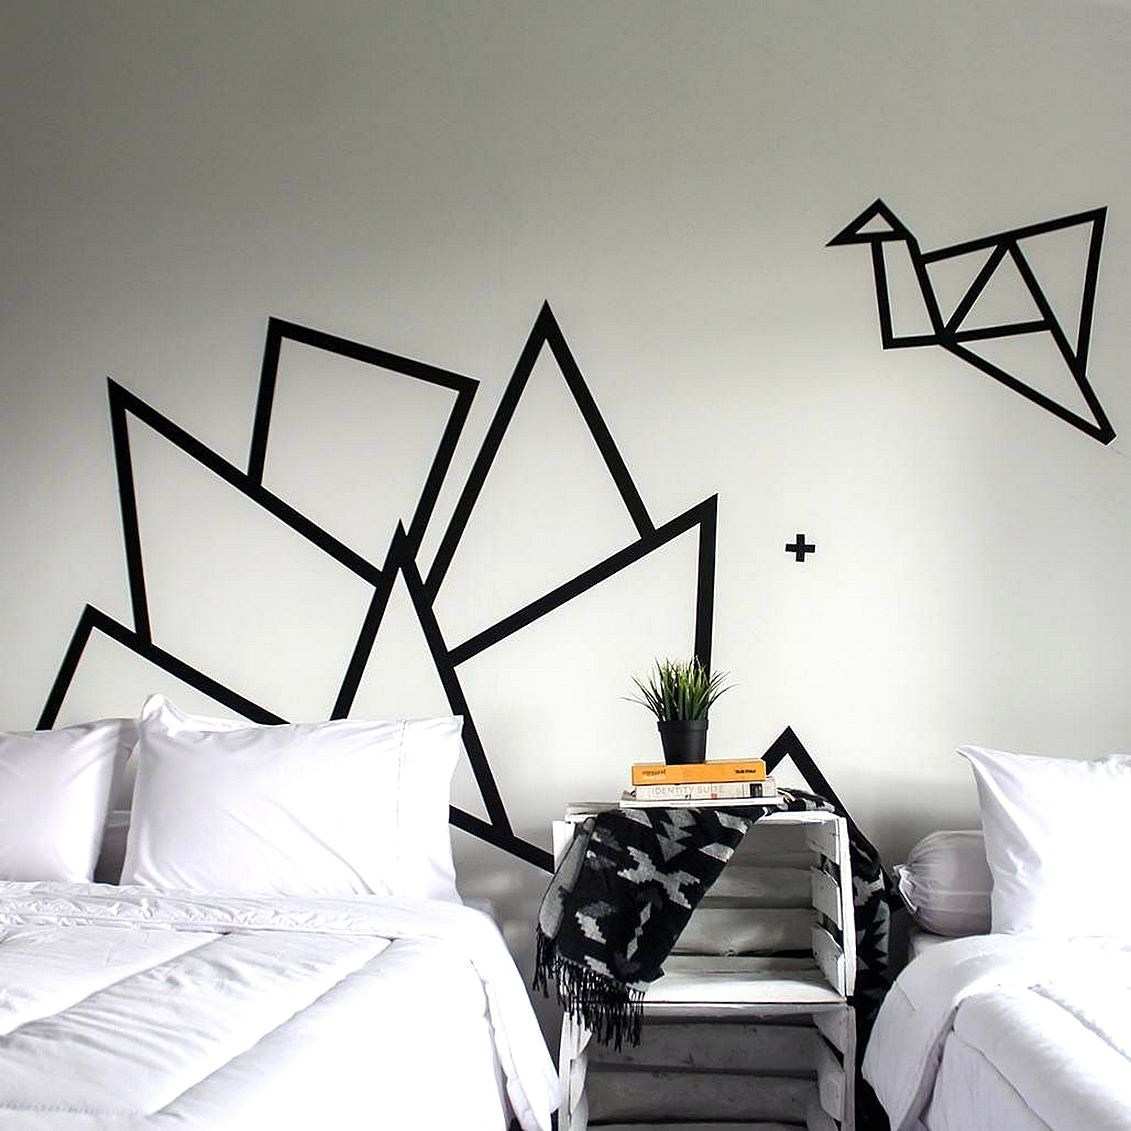 배경 dinding 카마르 hitam putih,벽,검정색과 흰색,방,가구,흑백 사진